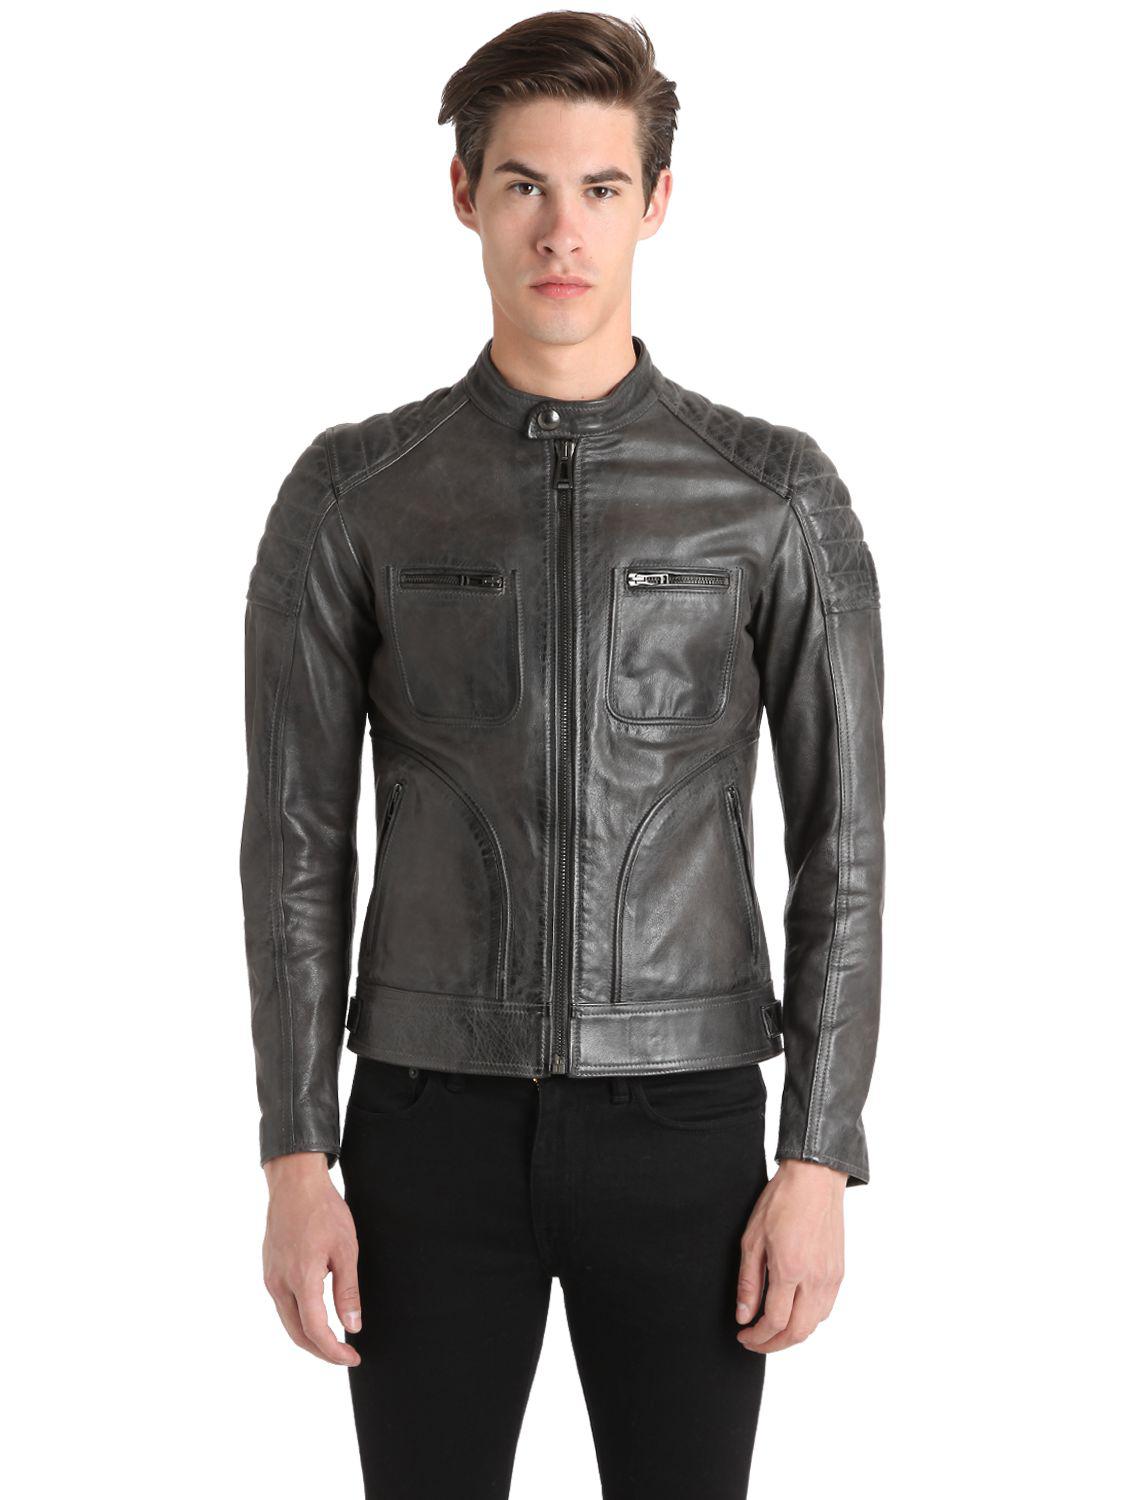 Belstaff Weybridge Leather Jacket in 46-48-56 (Grey) for Men - Lyst